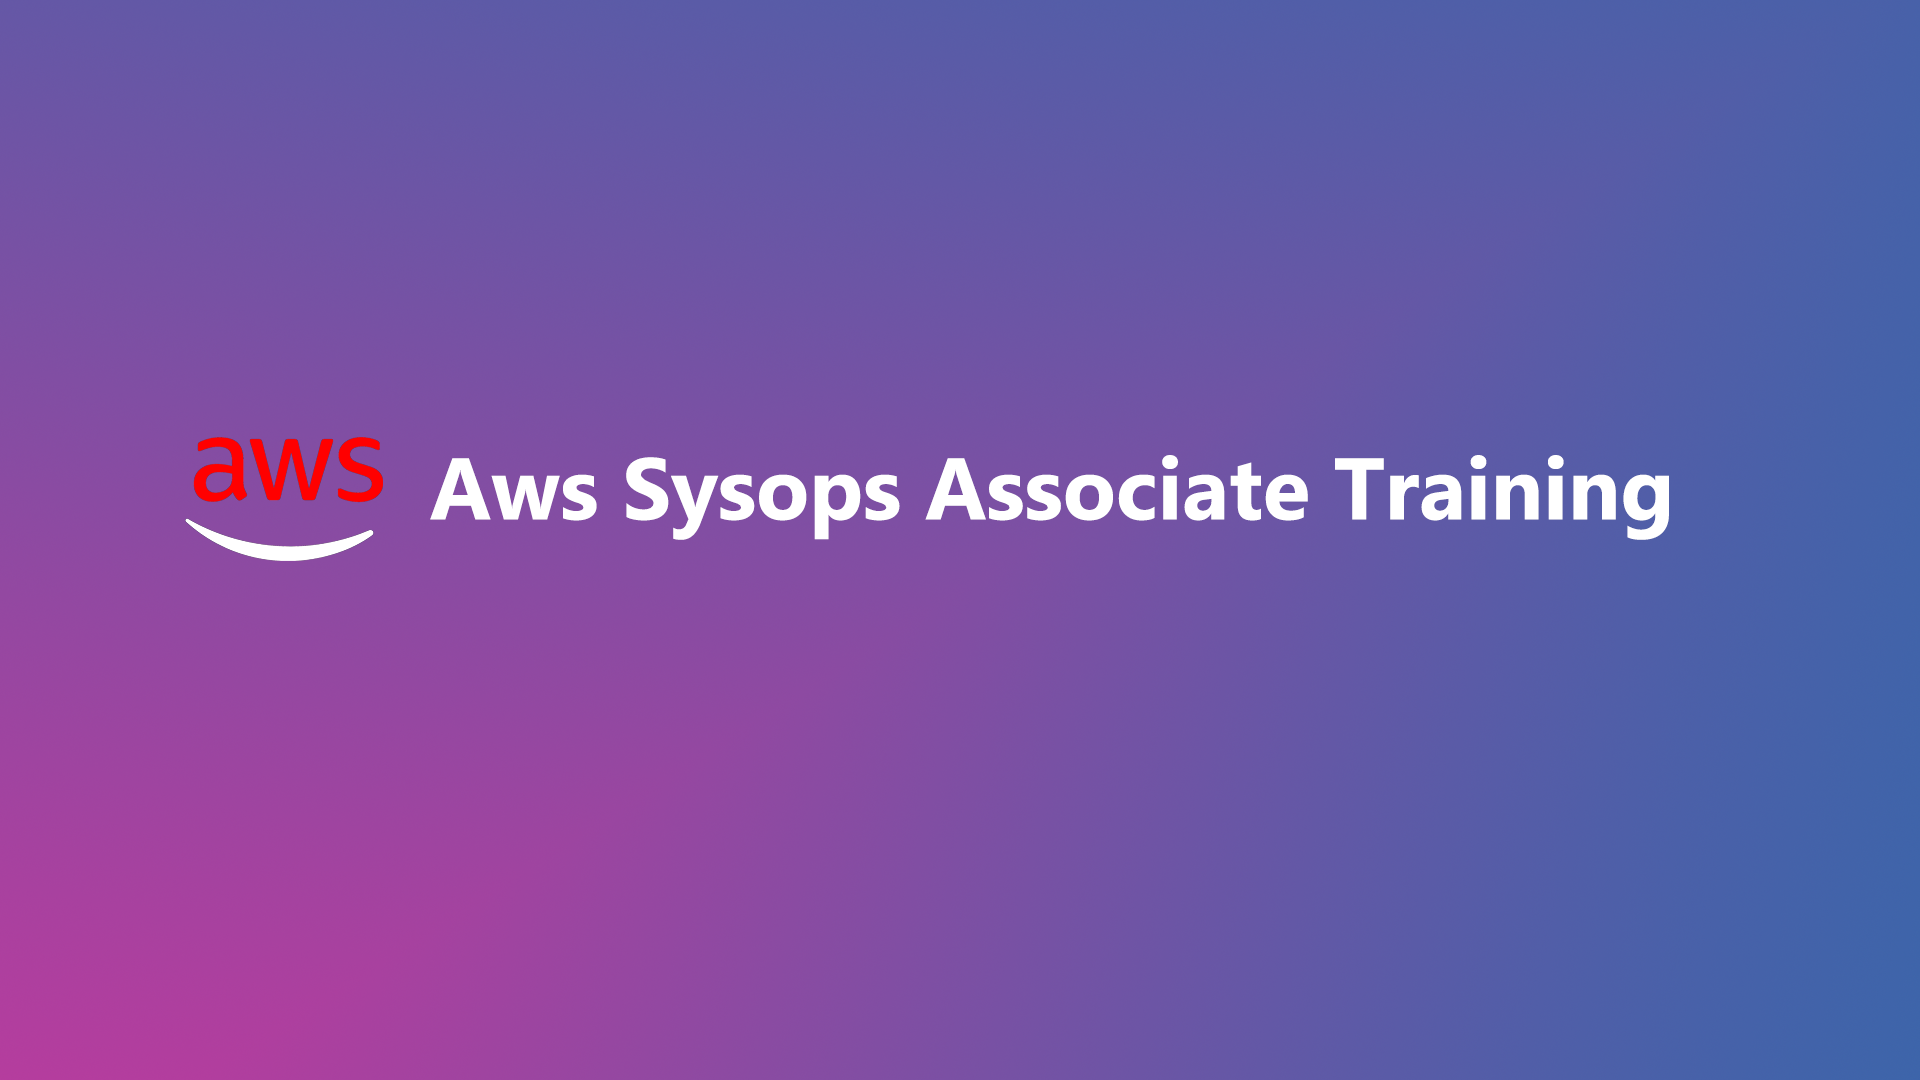 AWS SysOps Associate Training